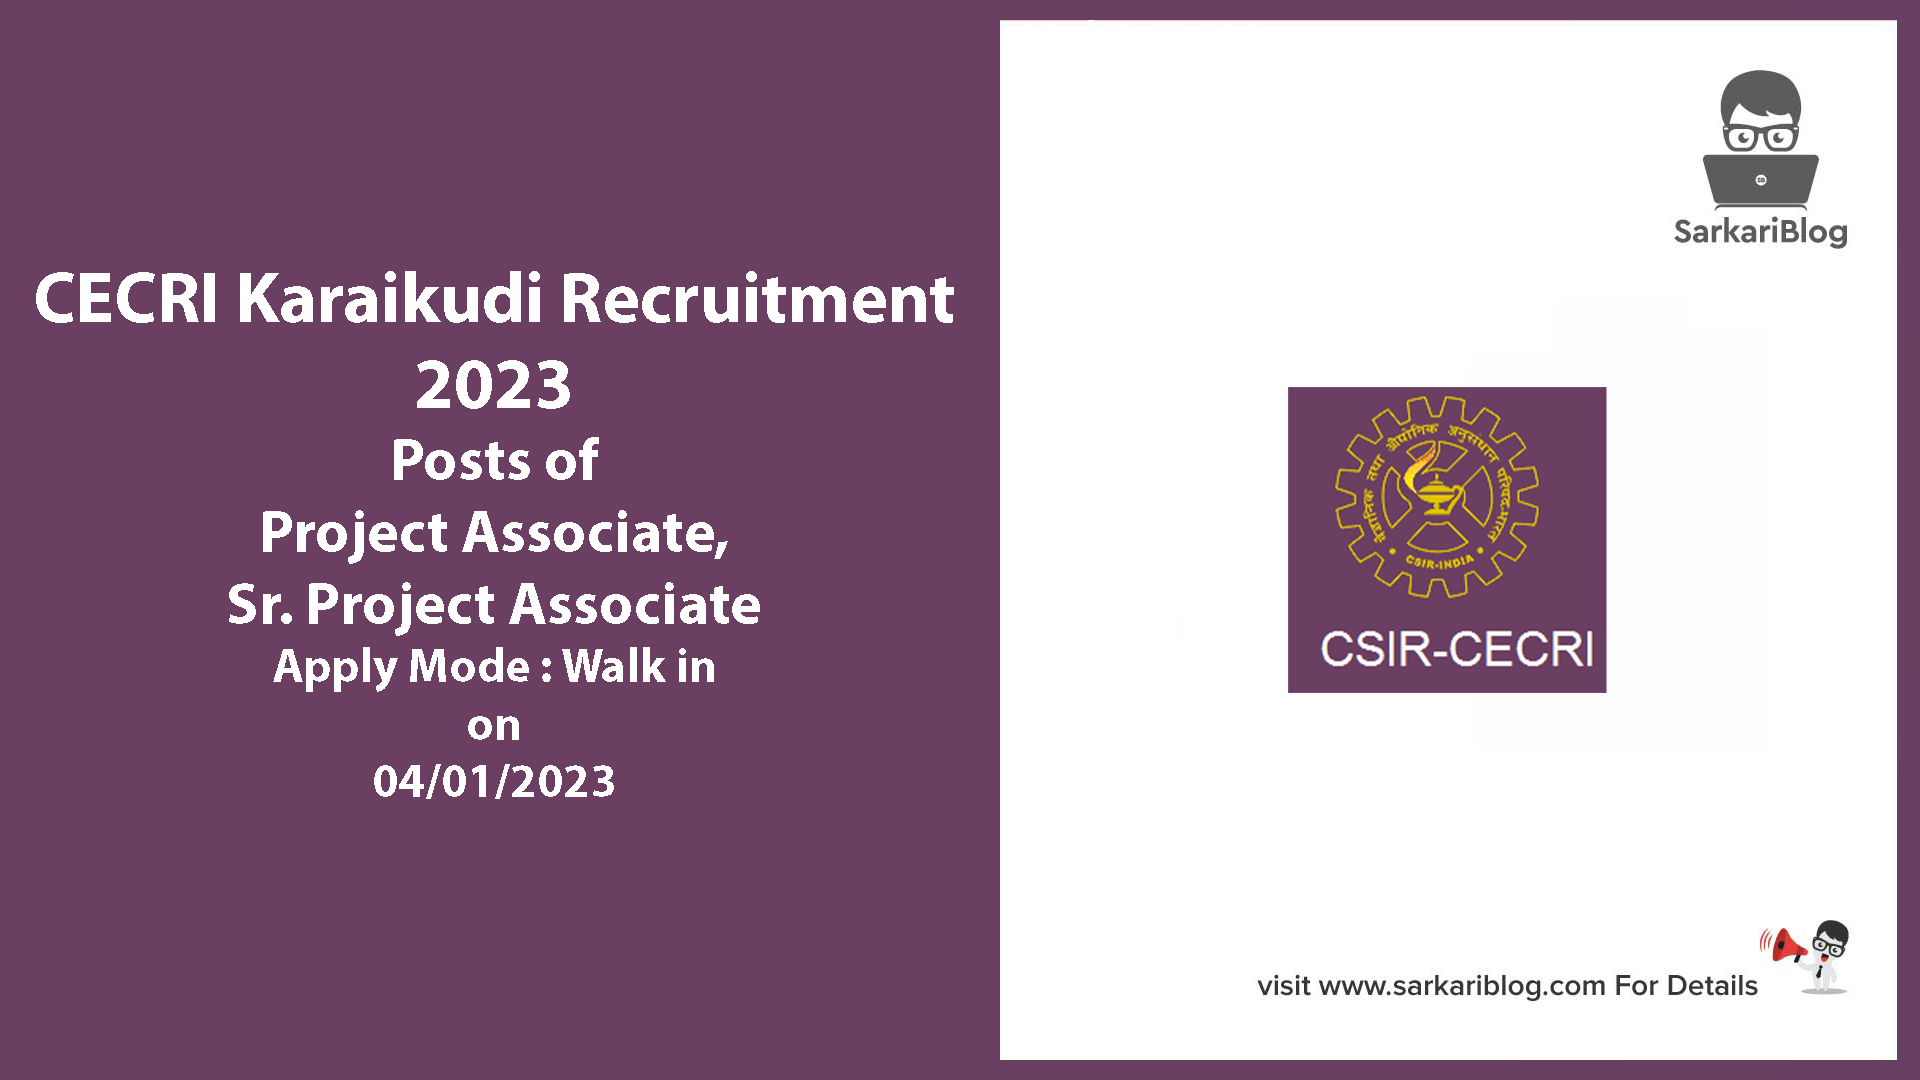 CECRI Karaikudi Recruitment 2023